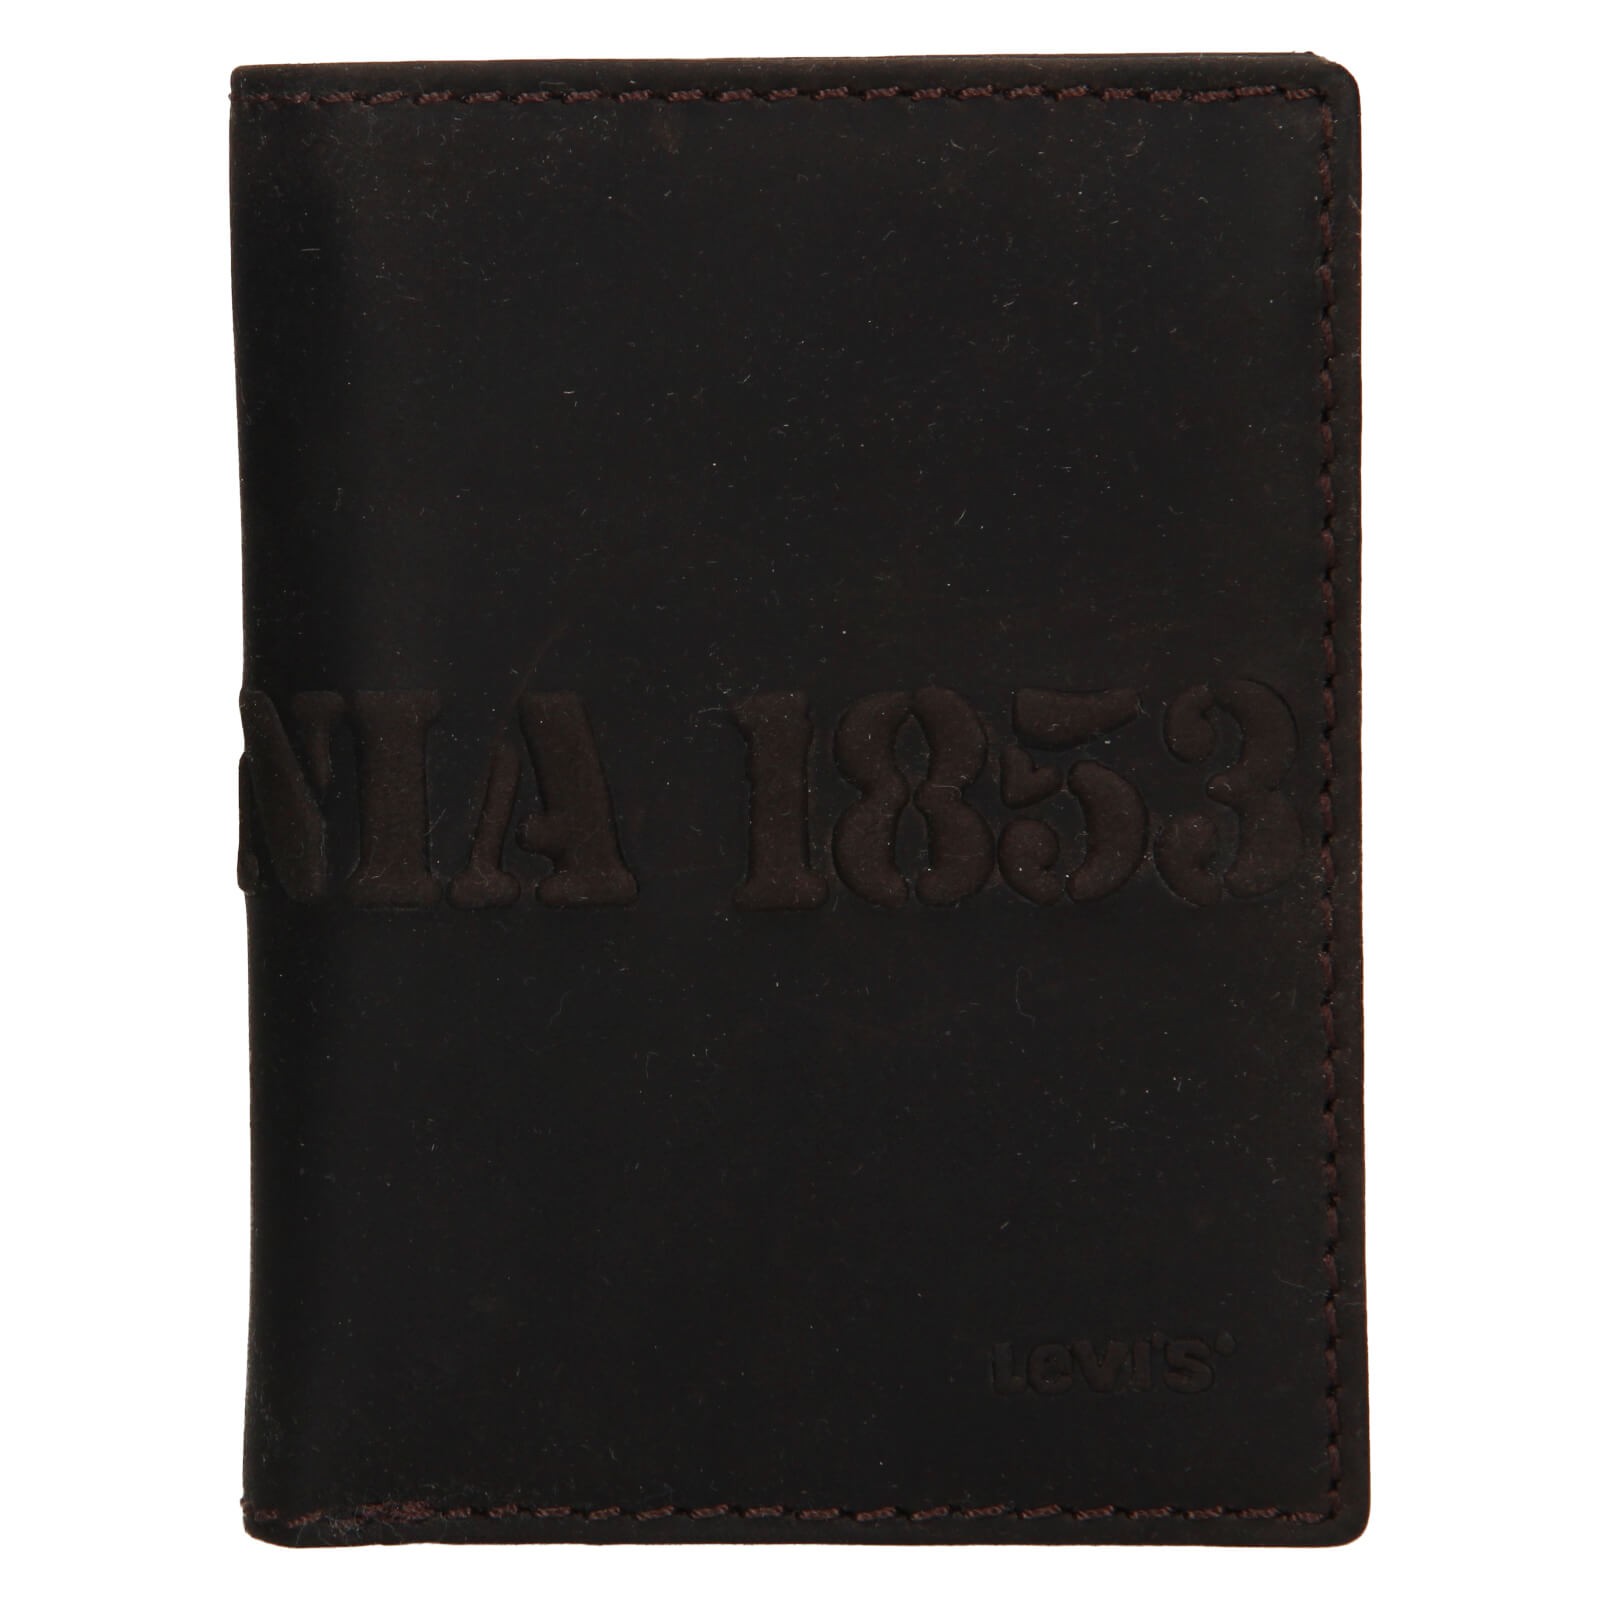 Pánská kožená peněženka Levis Liam - černá